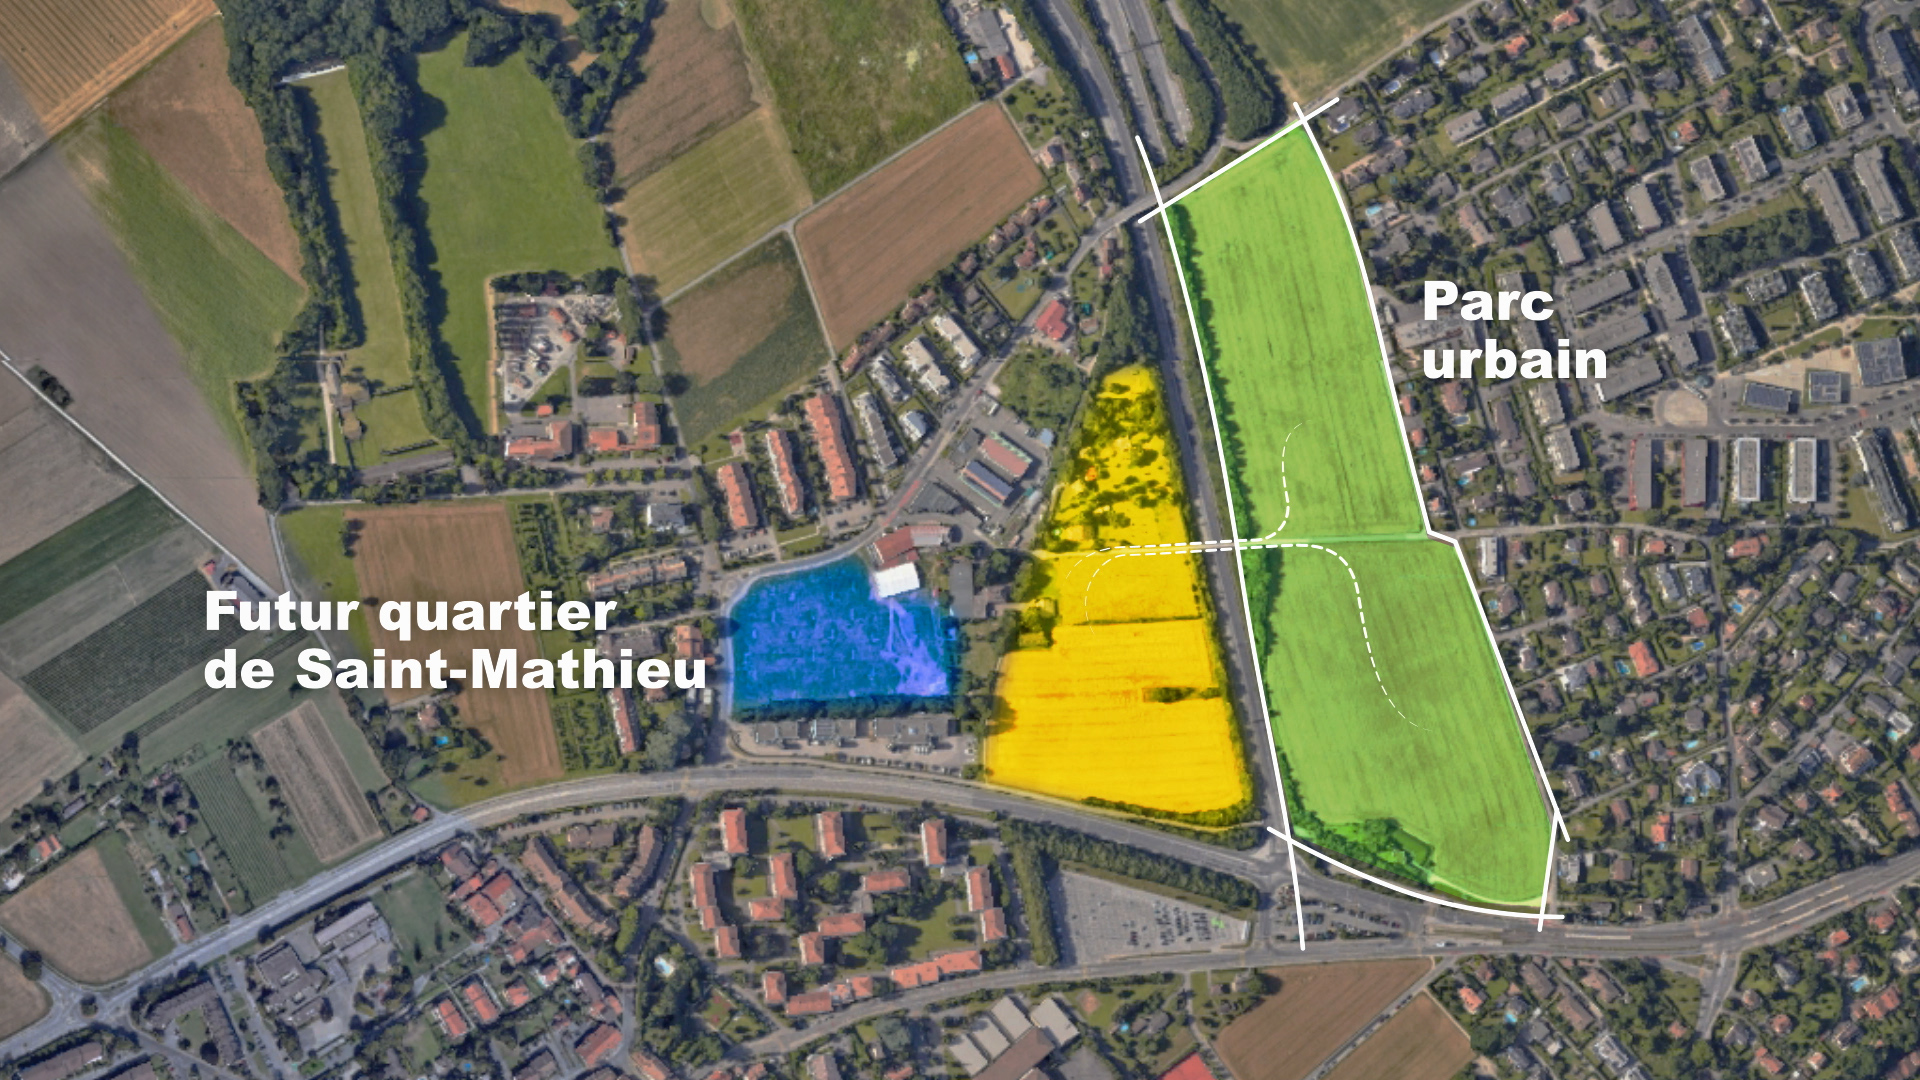 Projet Goutte de Saint-Mathieu, entre le futur quartier de logements et le parc agro-urbain